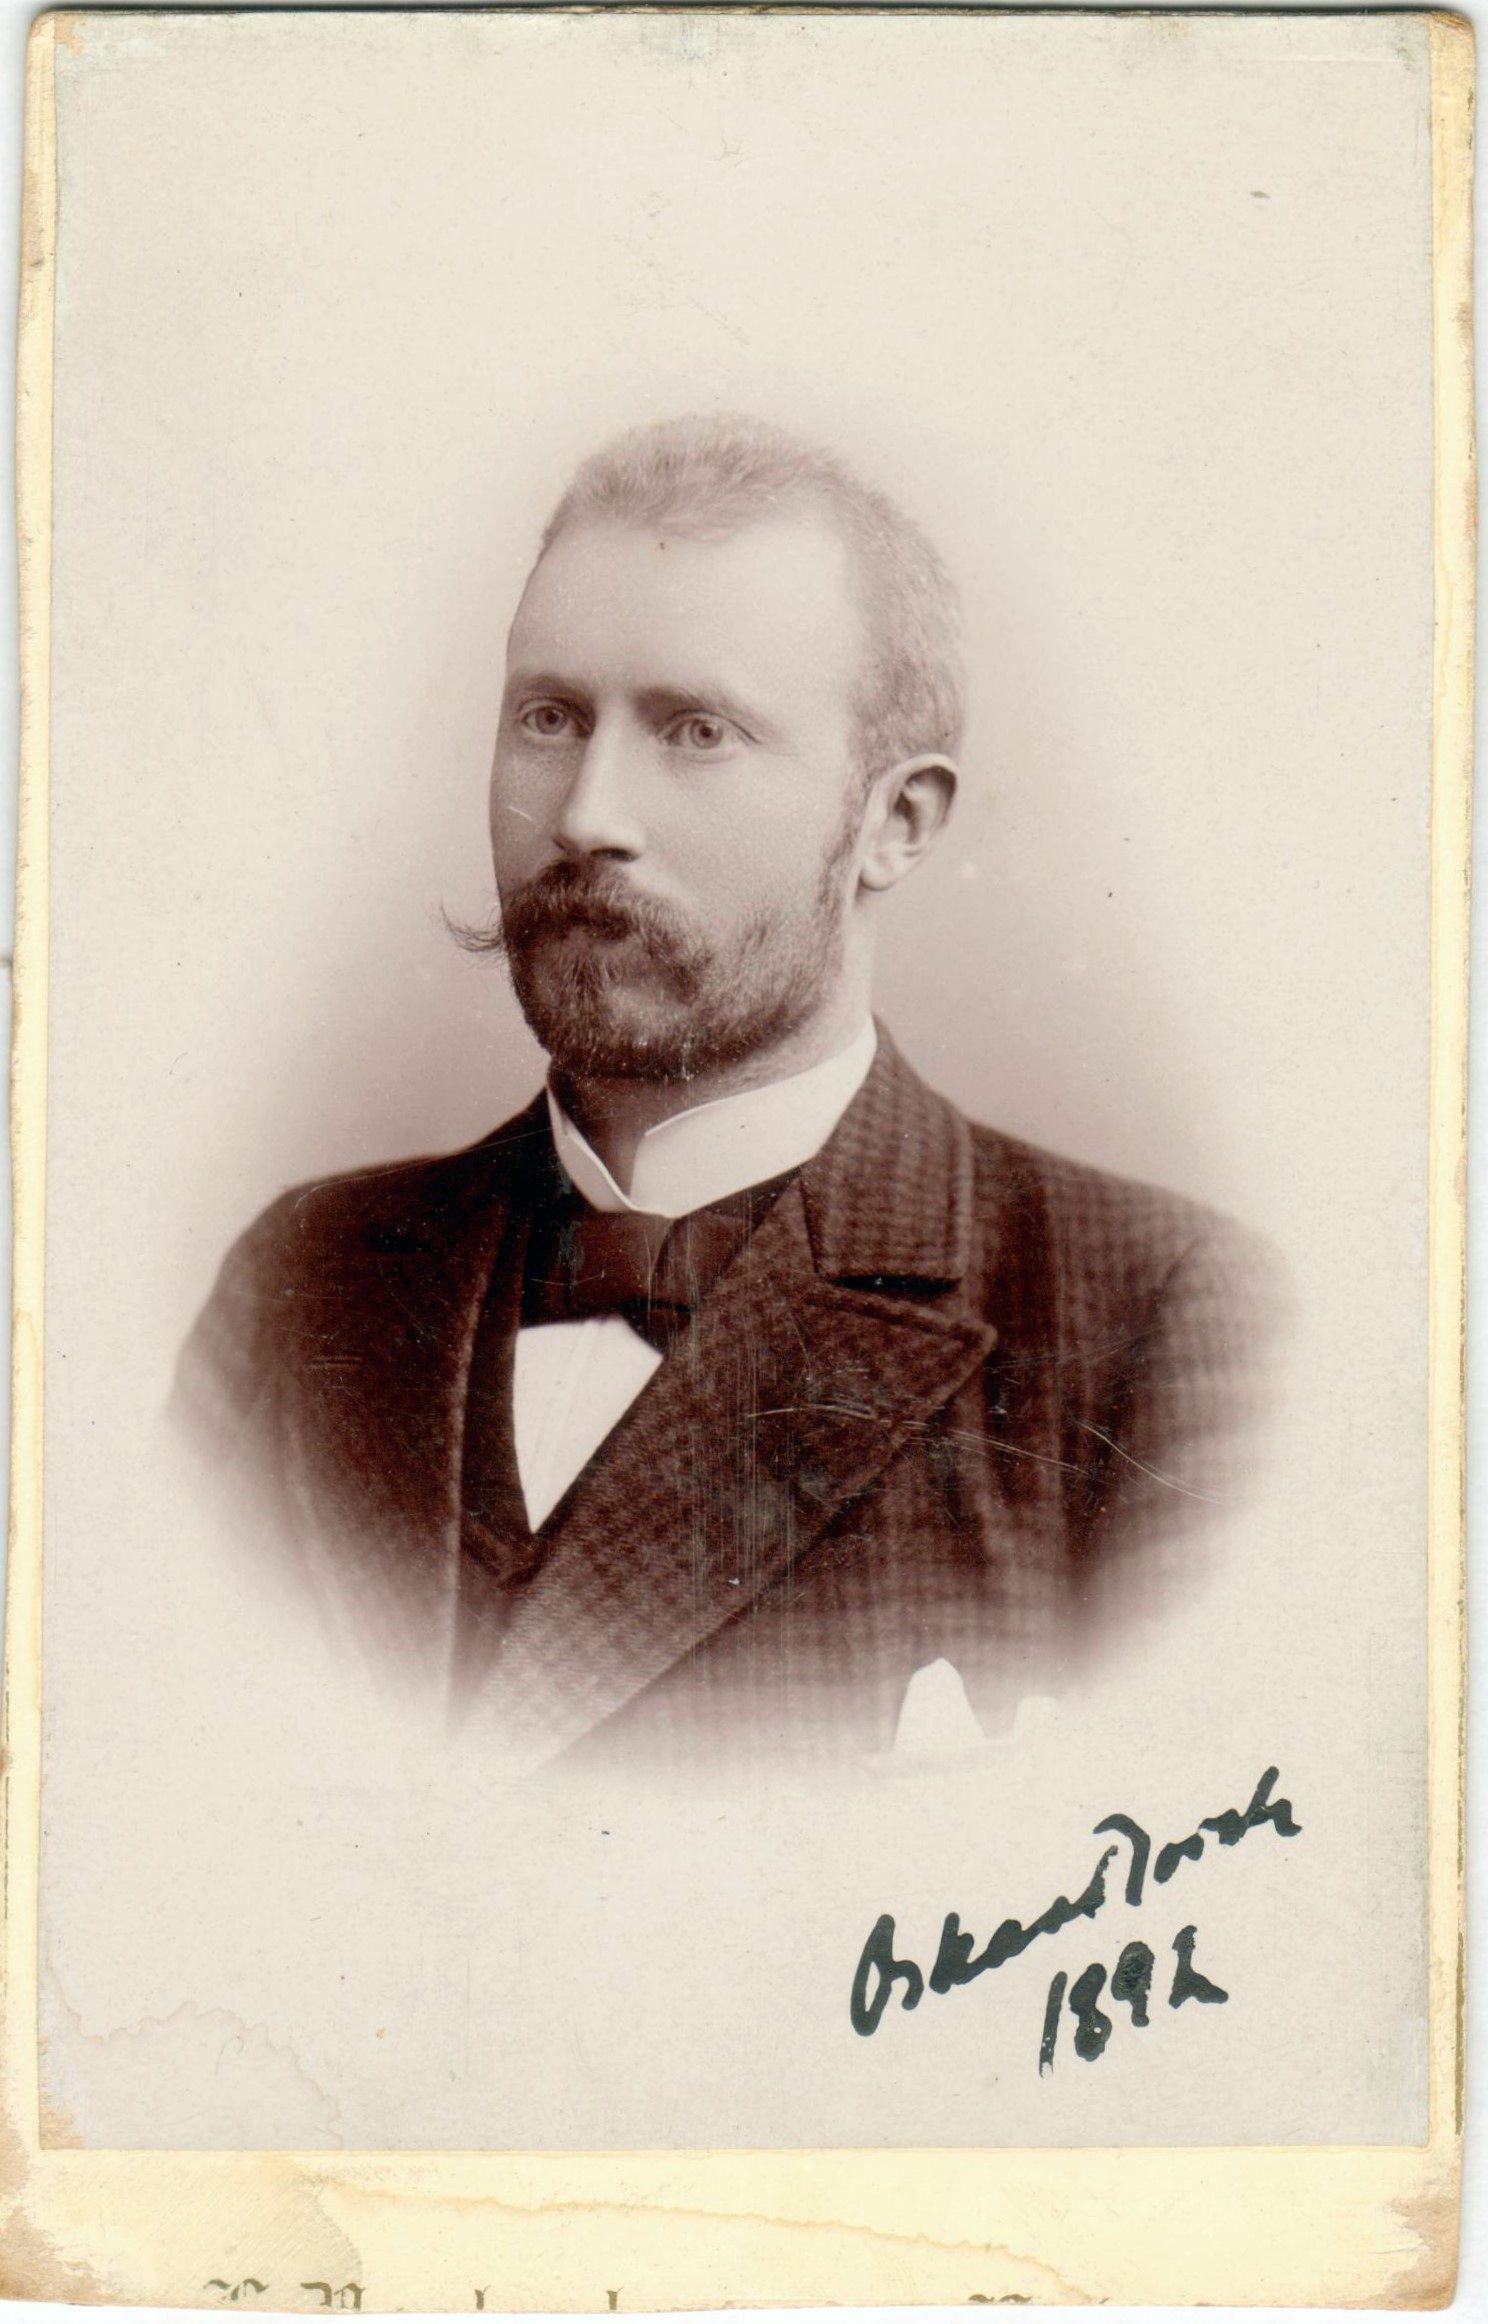 75.36 Oscar Borch f. 13.2.1866, søn af G.F Borch. Fotograf A. H. Vorbeck, ved Nørregade, Holstebro.